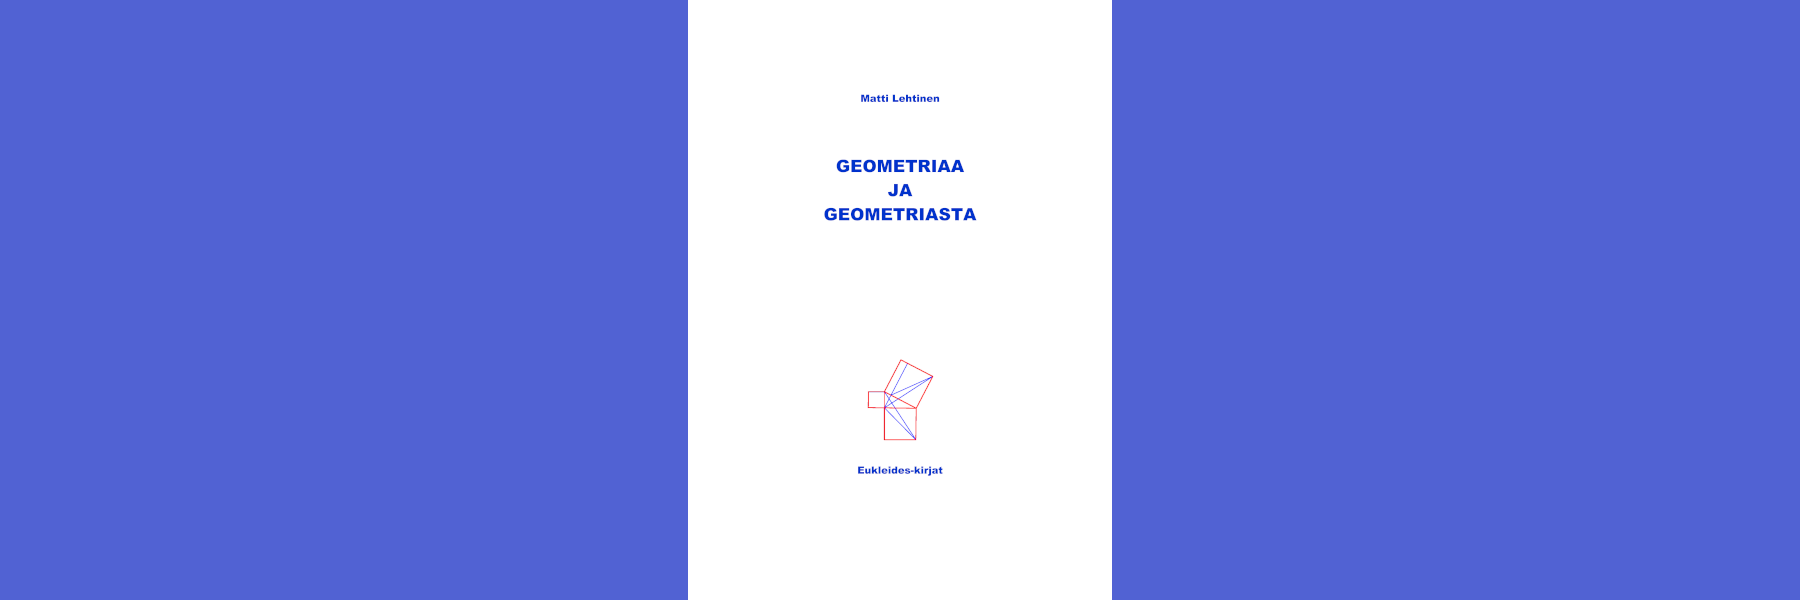 Kirjallisuutta: Geometriaa ja geometriasta